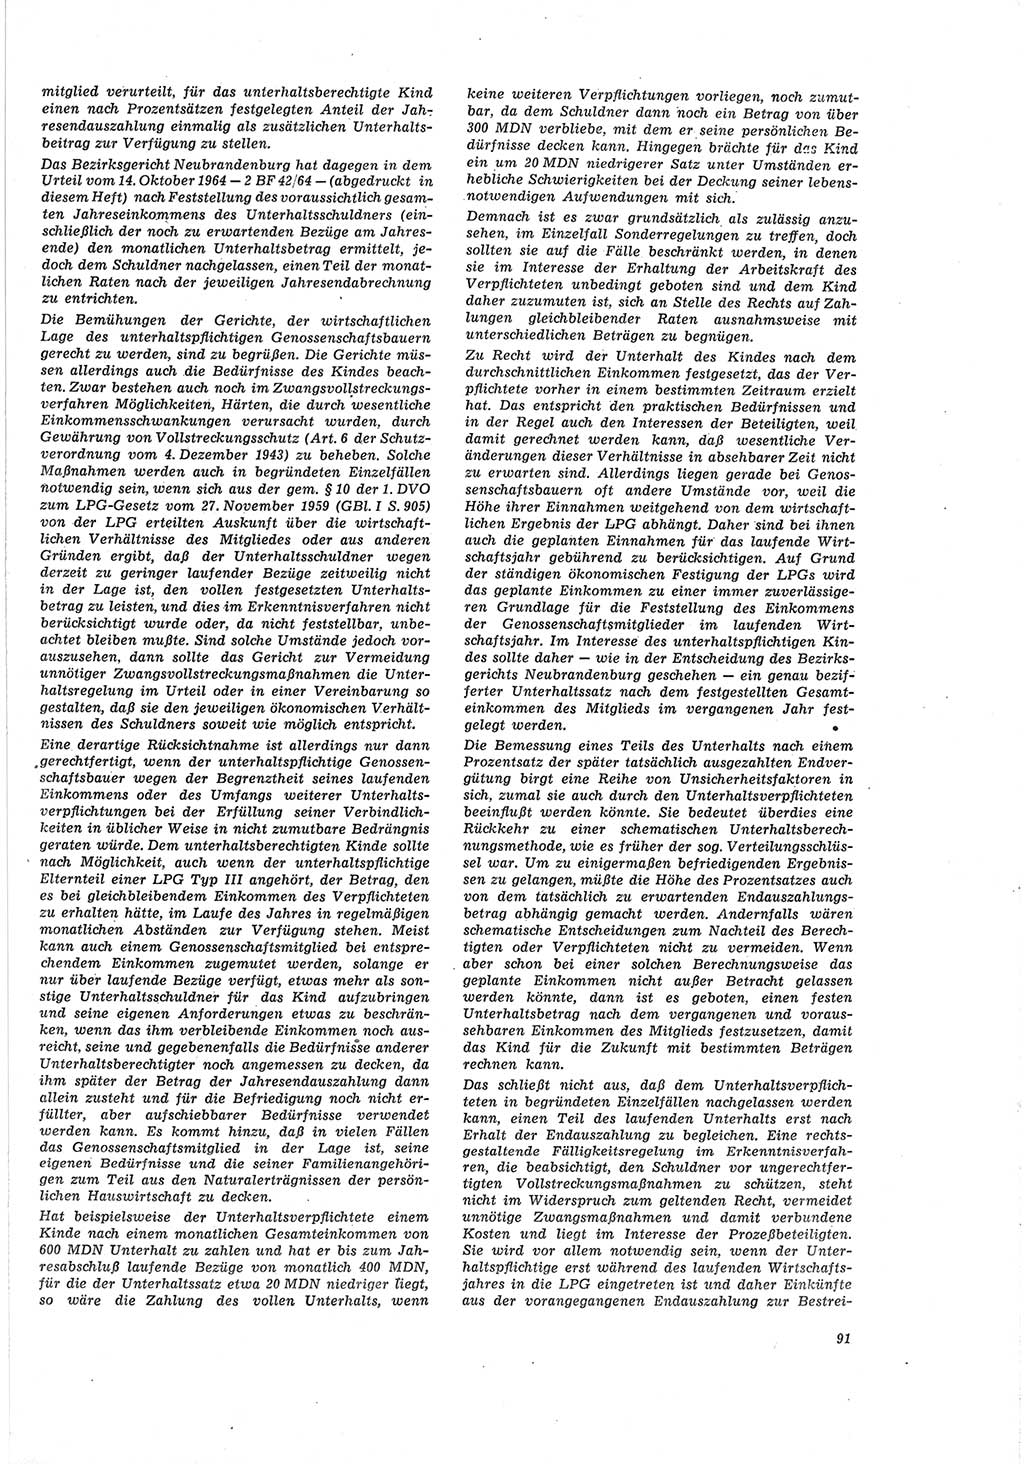 Neue Justiz (NJ), Zeitschrift für Recht und Rechtswissenschaft [Deutsche Demokratische Republik (DDR)], 19. Jahrgang 1965, Seite 91 (NJ DDR 1965, S. 91)